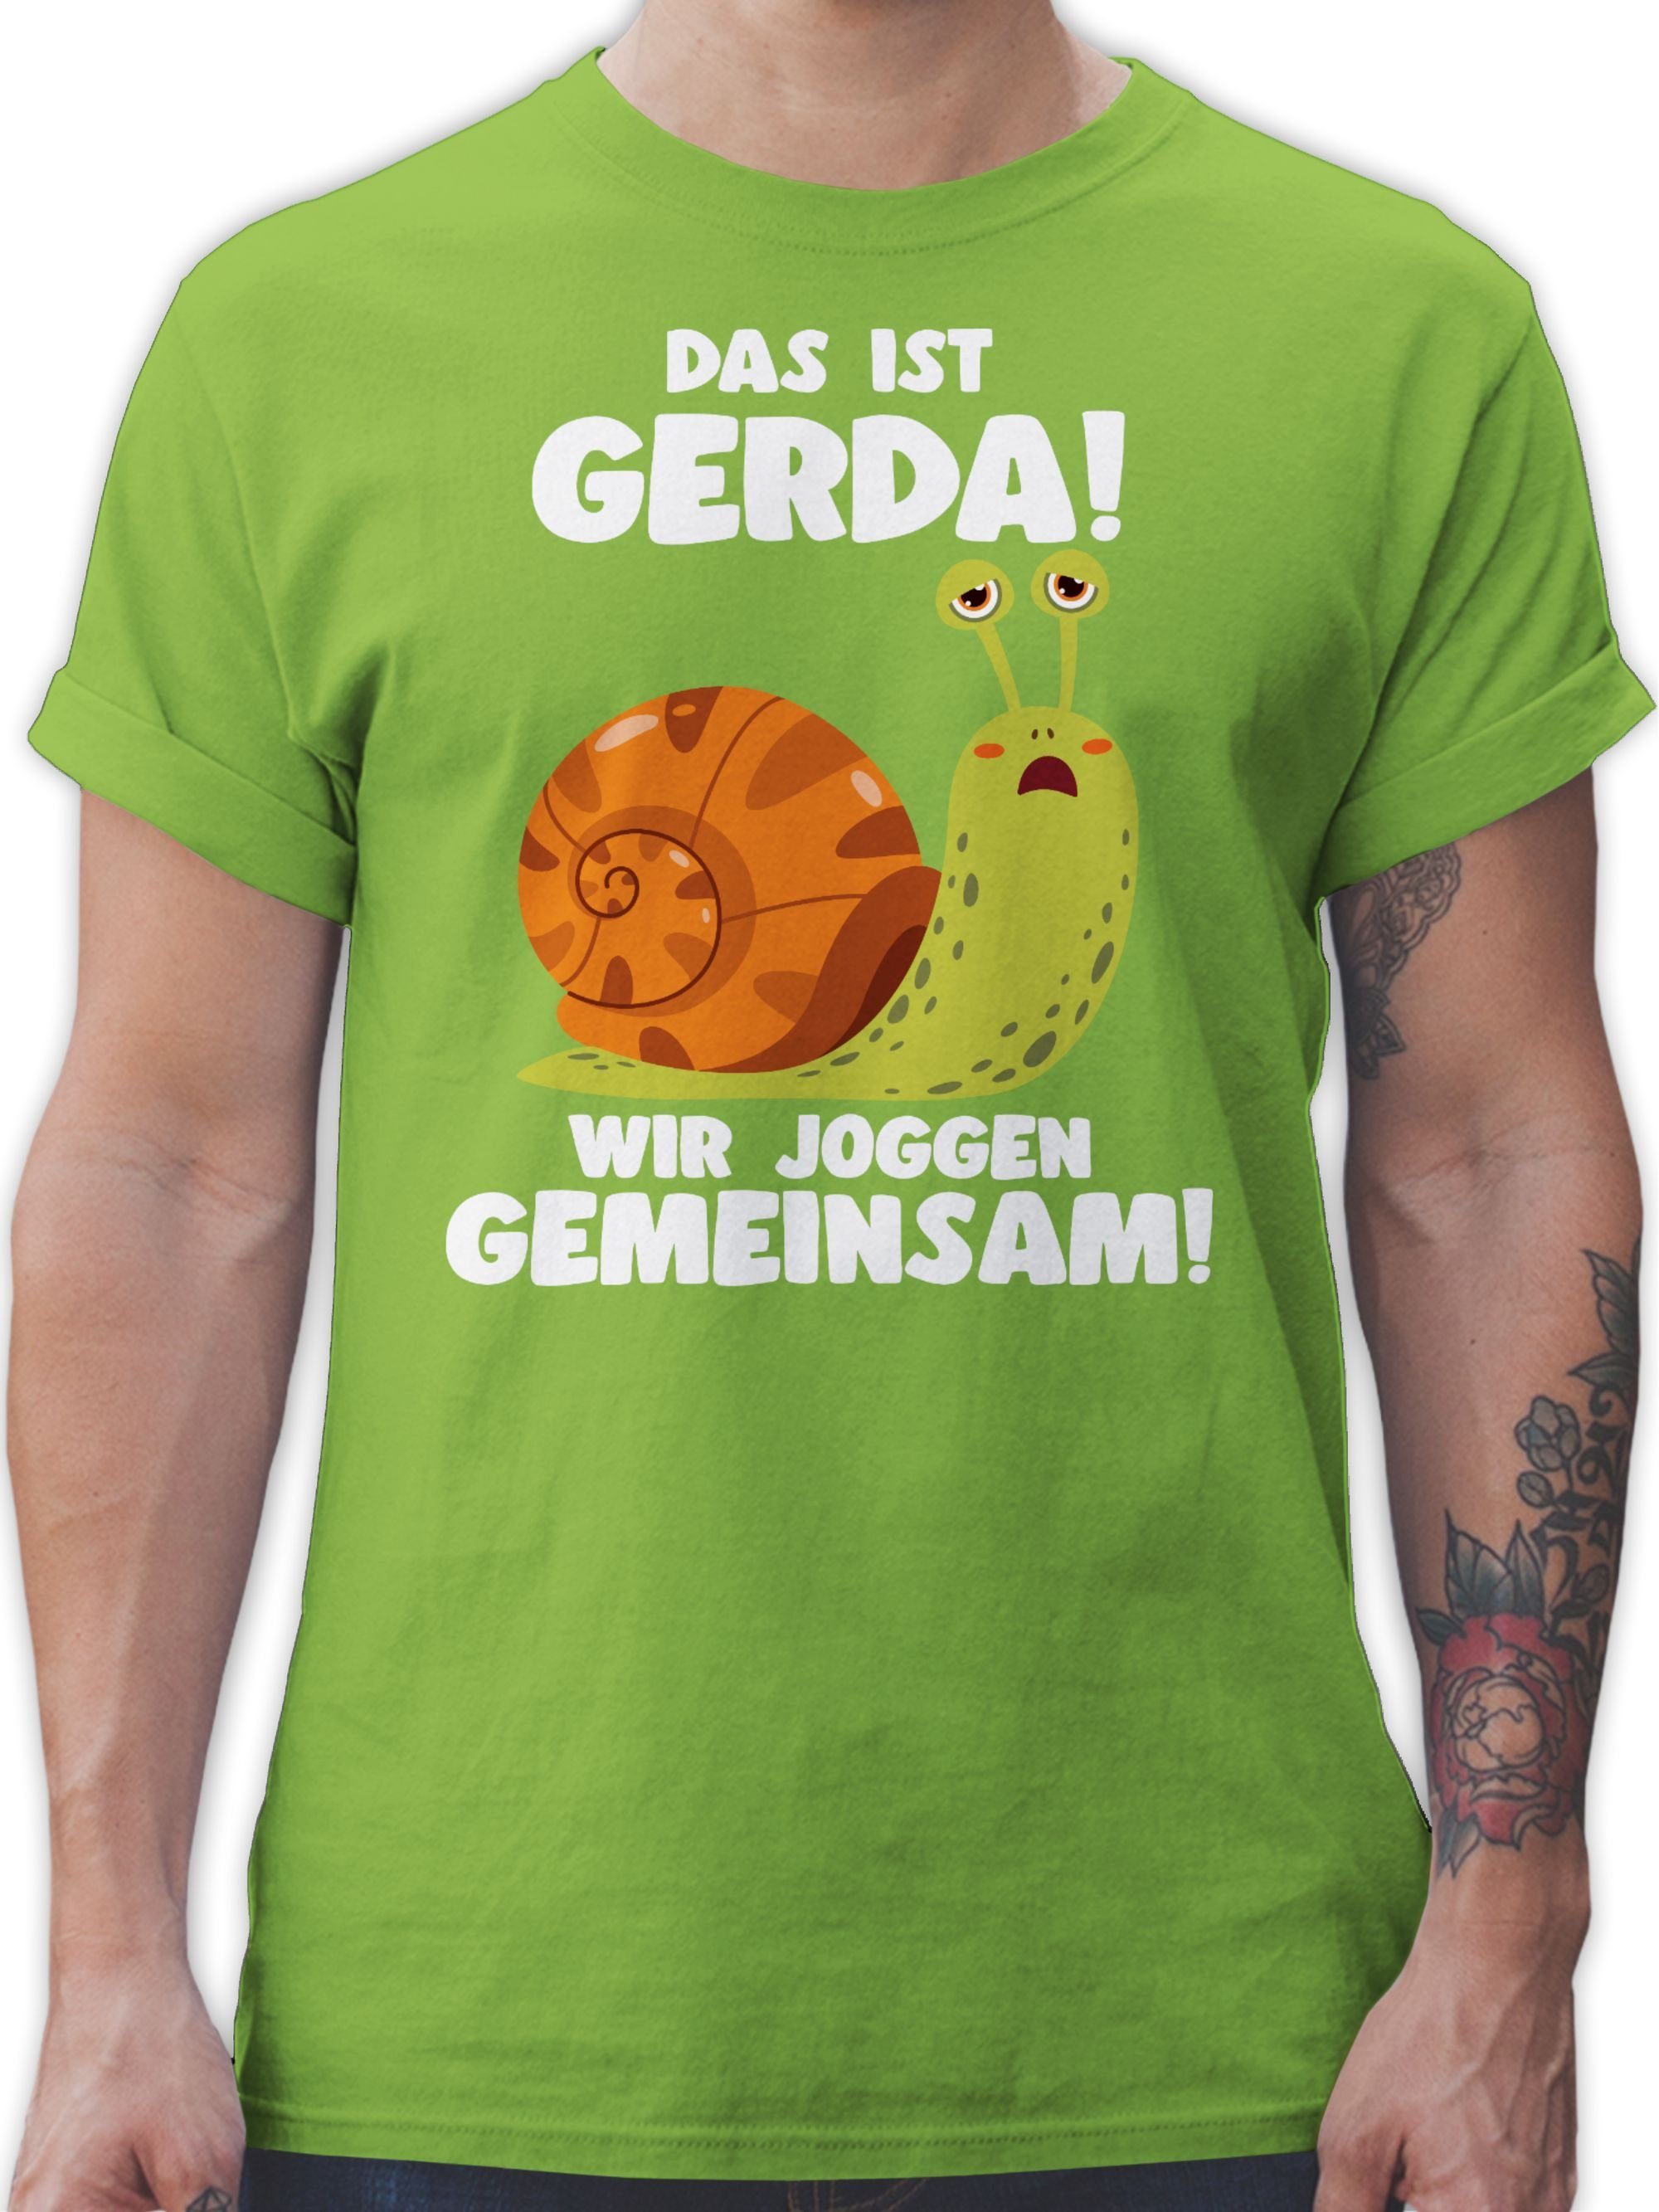 Shirtracer T-Shirt Das ist Gerda Wir joggen gemeinsam - Langsame Schecke Joggen Lustig Sp Wandern Laufen Joggen Zubehör 02 Hellgrün